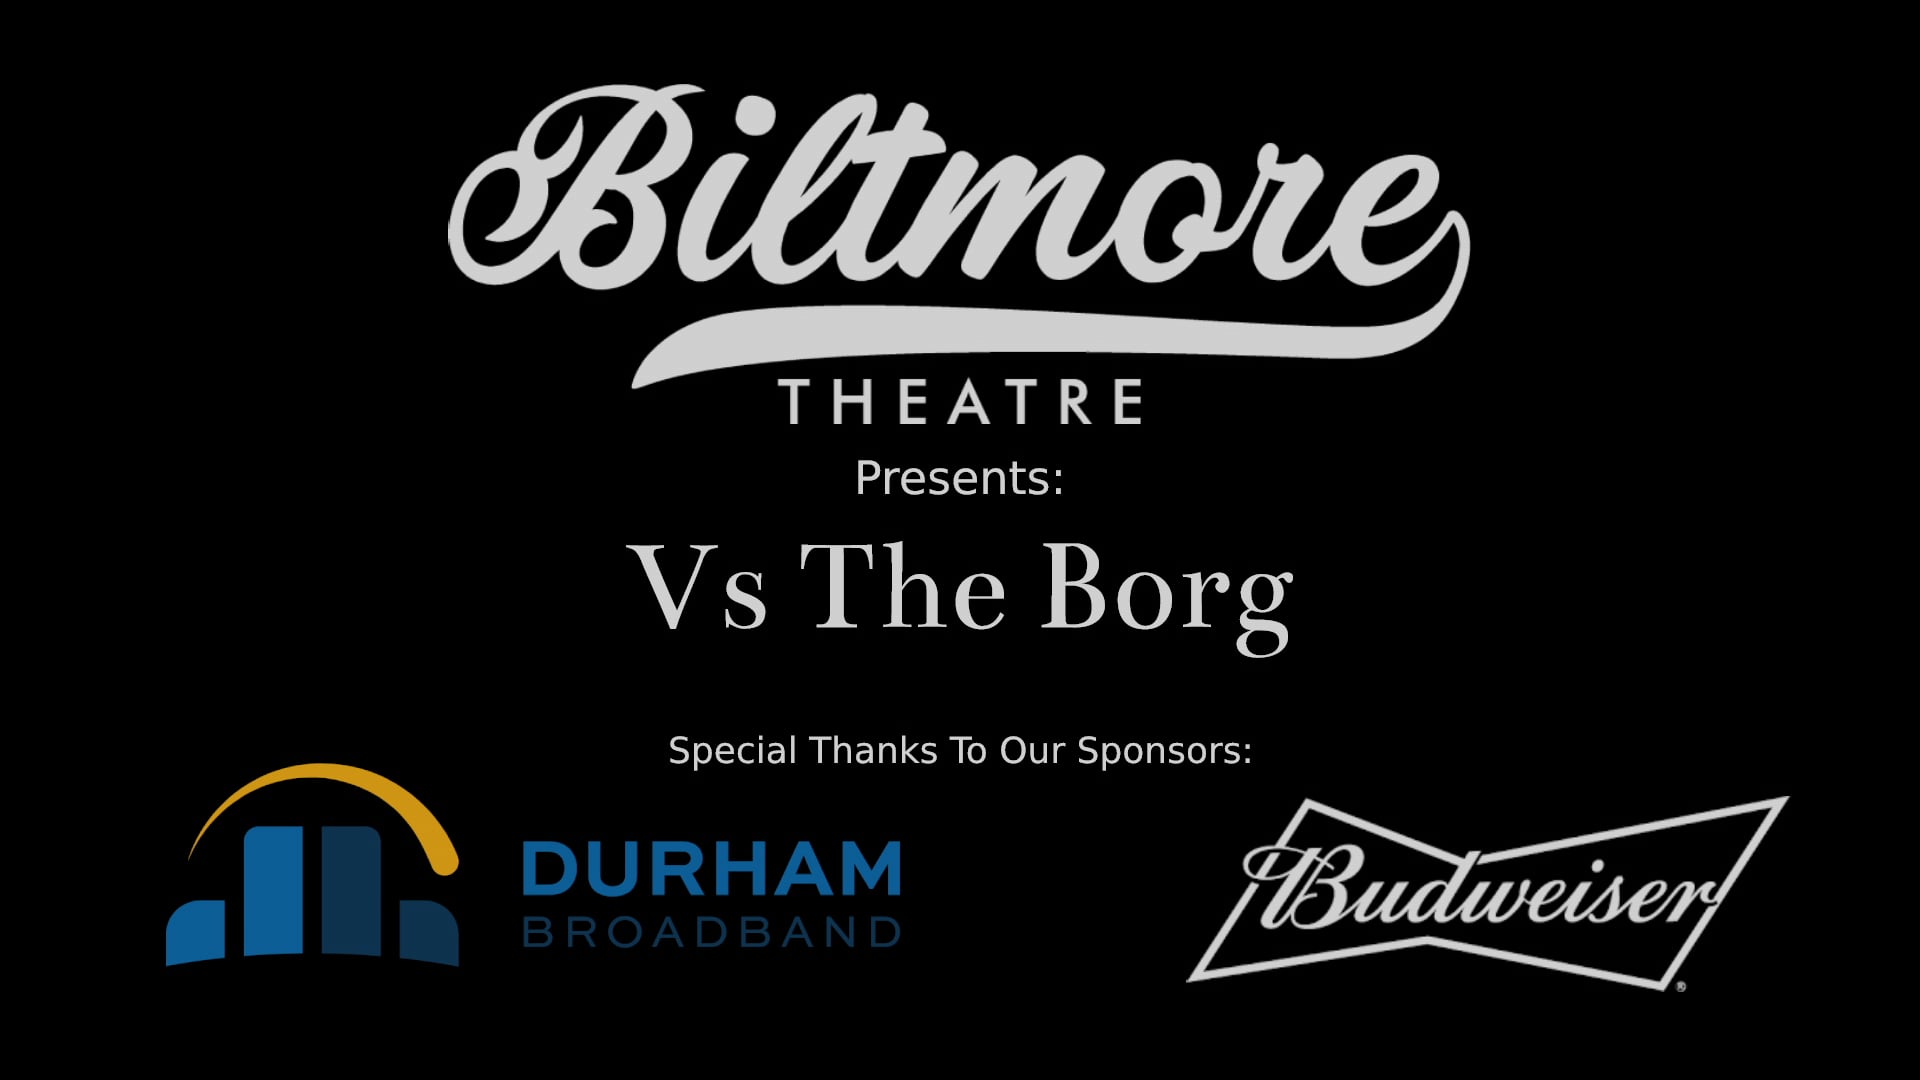 The Biltmore Theatre Presents Vs The Borg